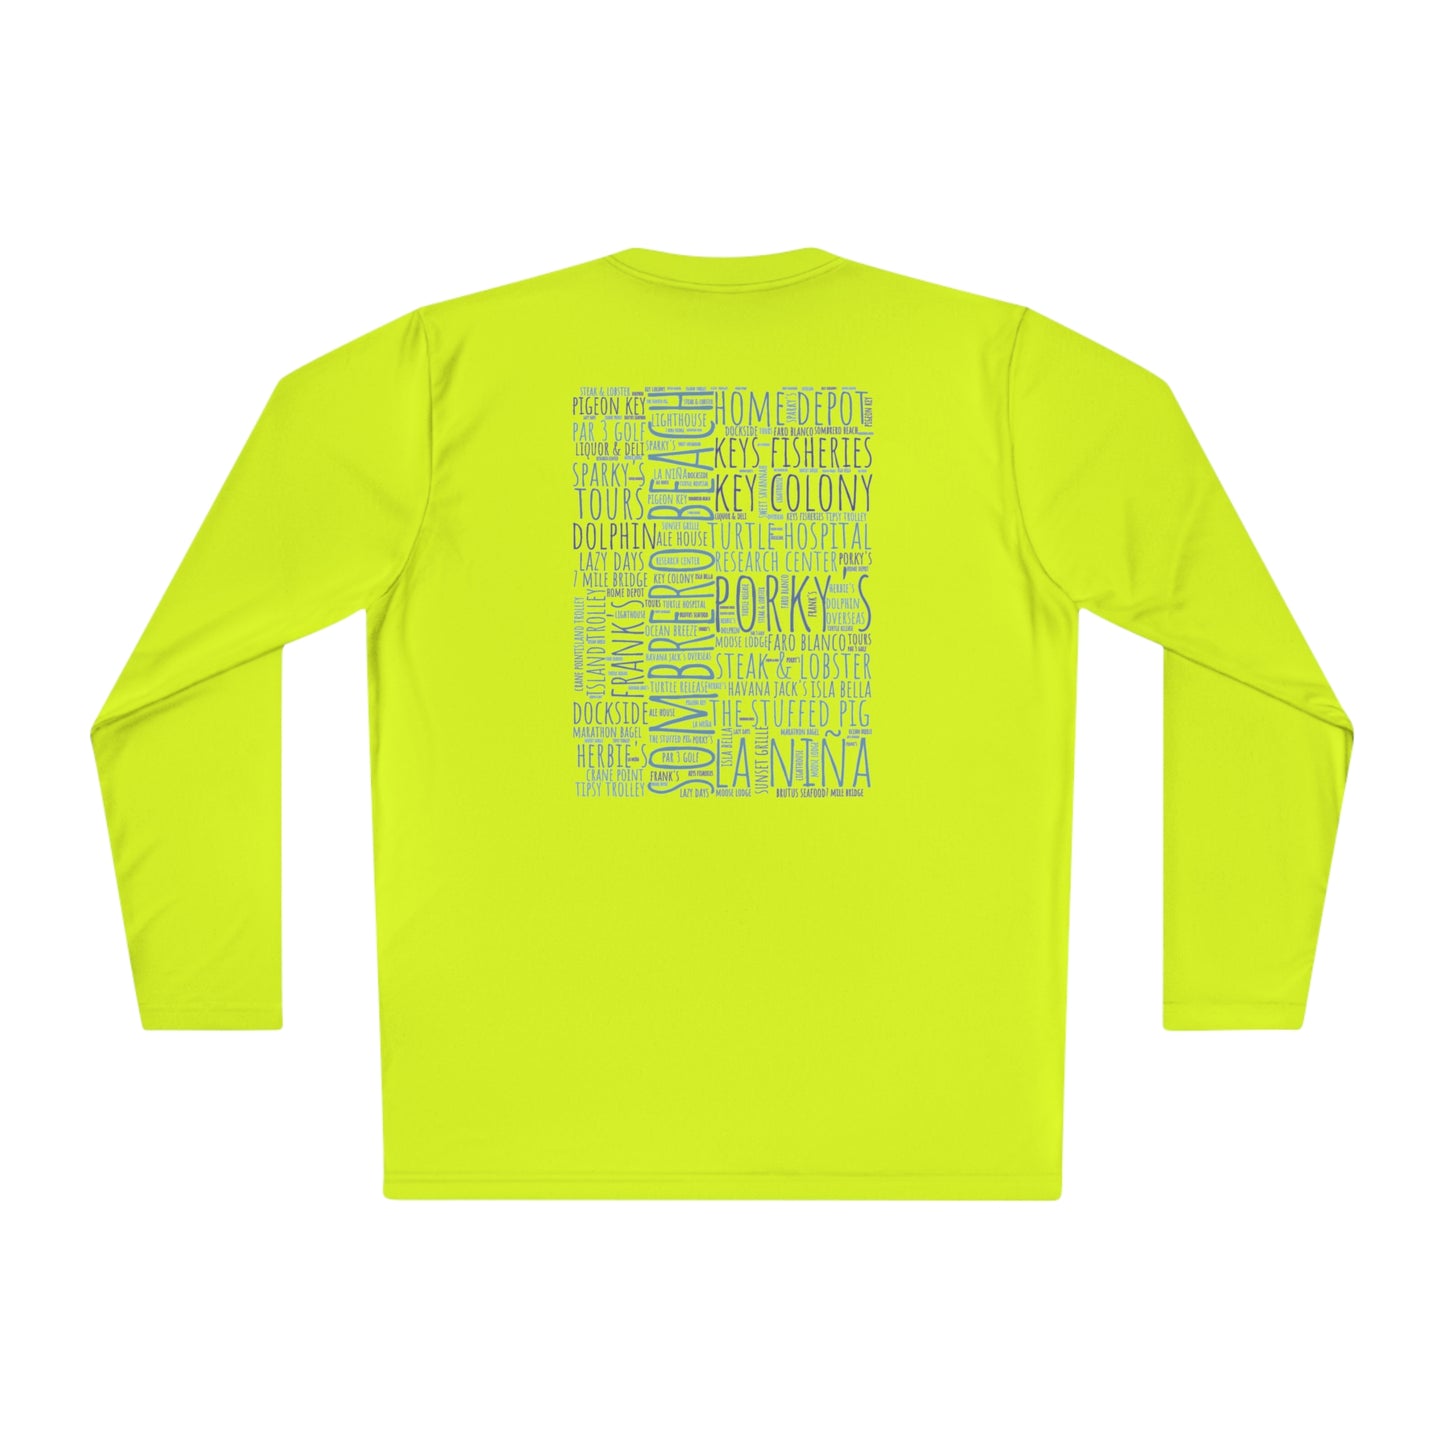 Marathon Icons Fishing Tshirt - keys local longsleeve tee - fishing shirt